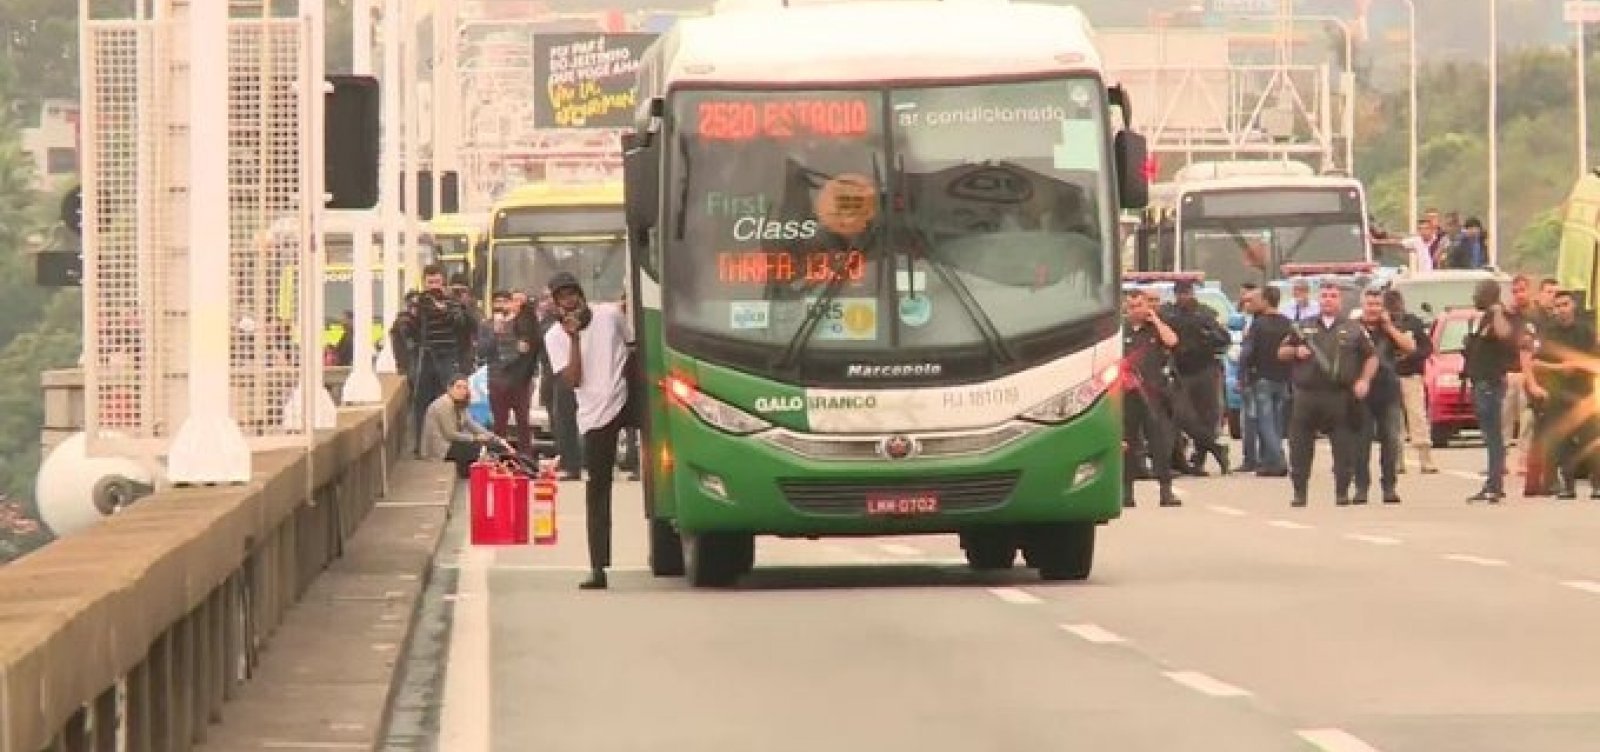 Polícia ouviu 30 testemunhas do sequestro do ônibus no Rio